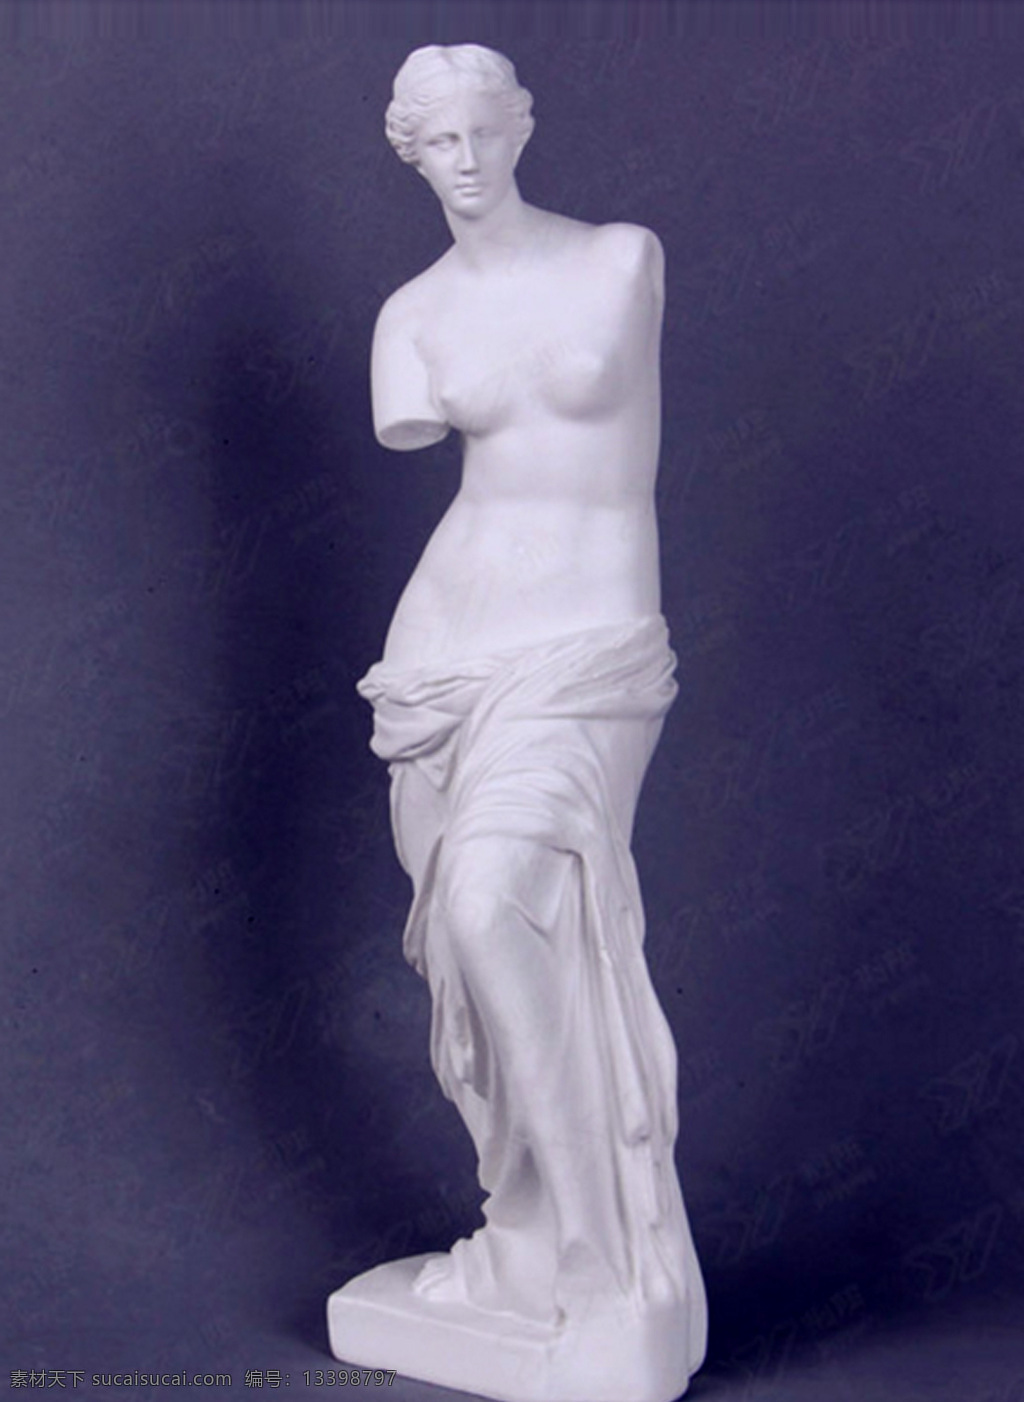 维纳斯雕塑 石膏像 雕像 雕塑 人物雕像 石膏模型 人物造型 建筑园林